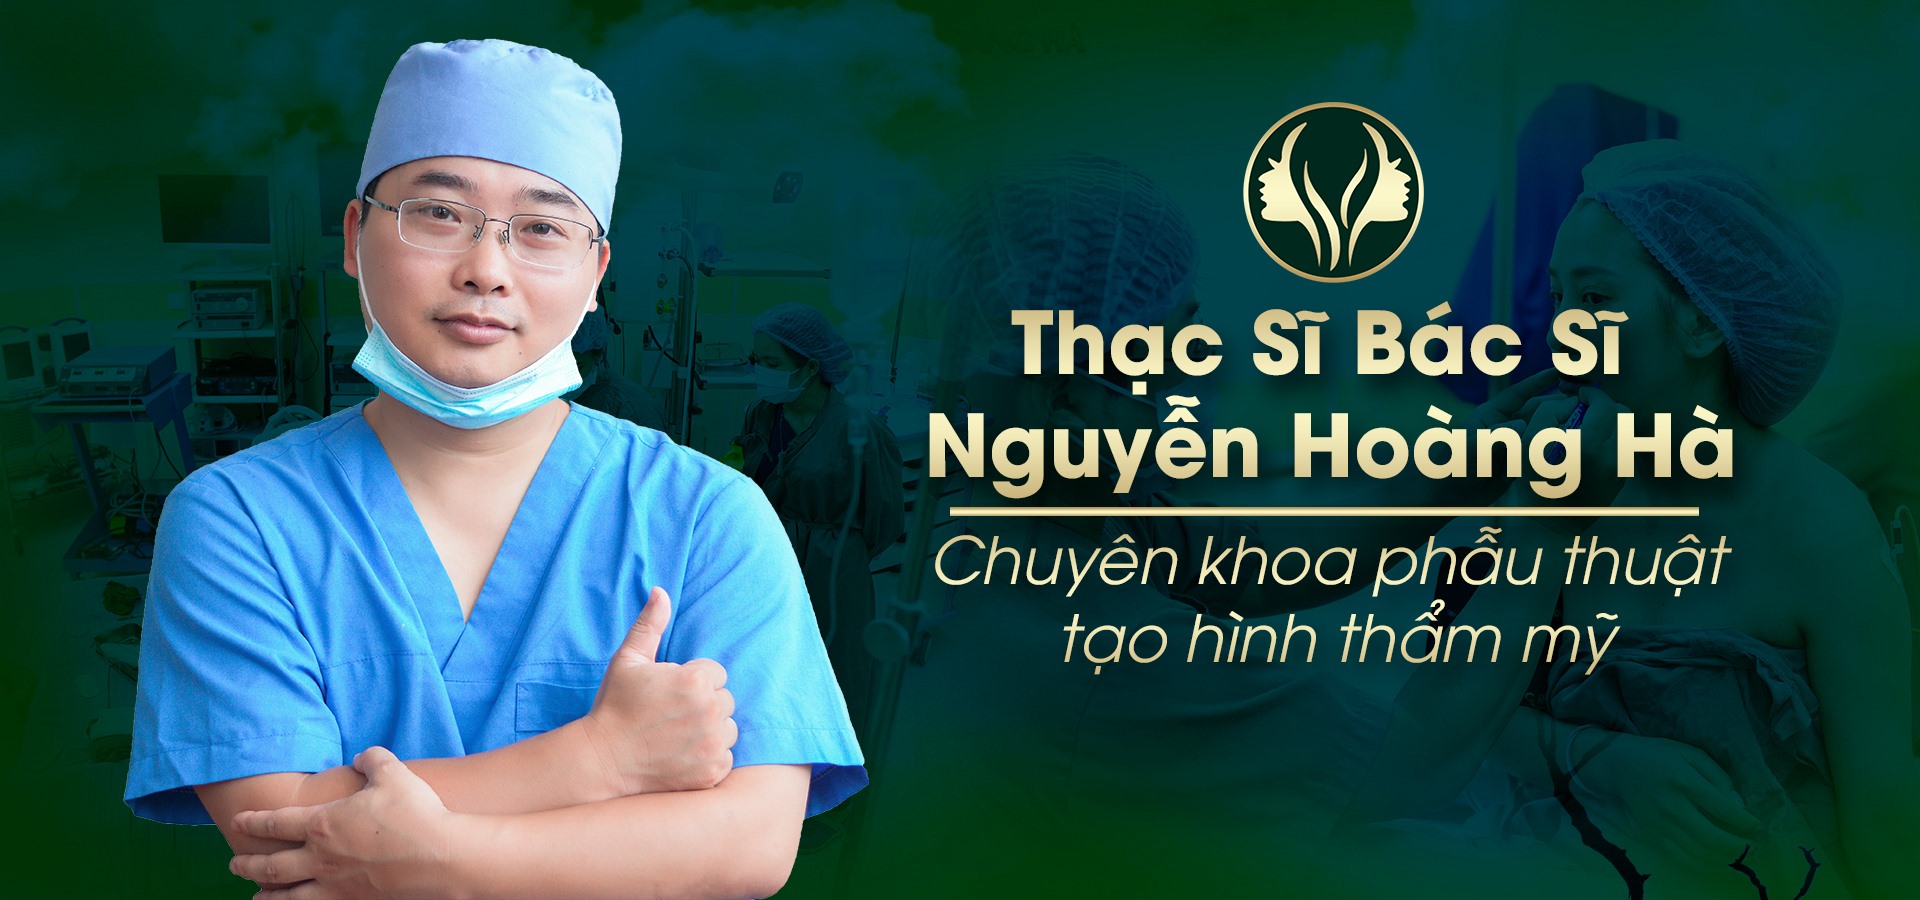 Nâng mũi tại Dr Hoàng Hà để được trực tiếp Ths Bác sĩ Nguyễn Hoàng Hà thực hiện